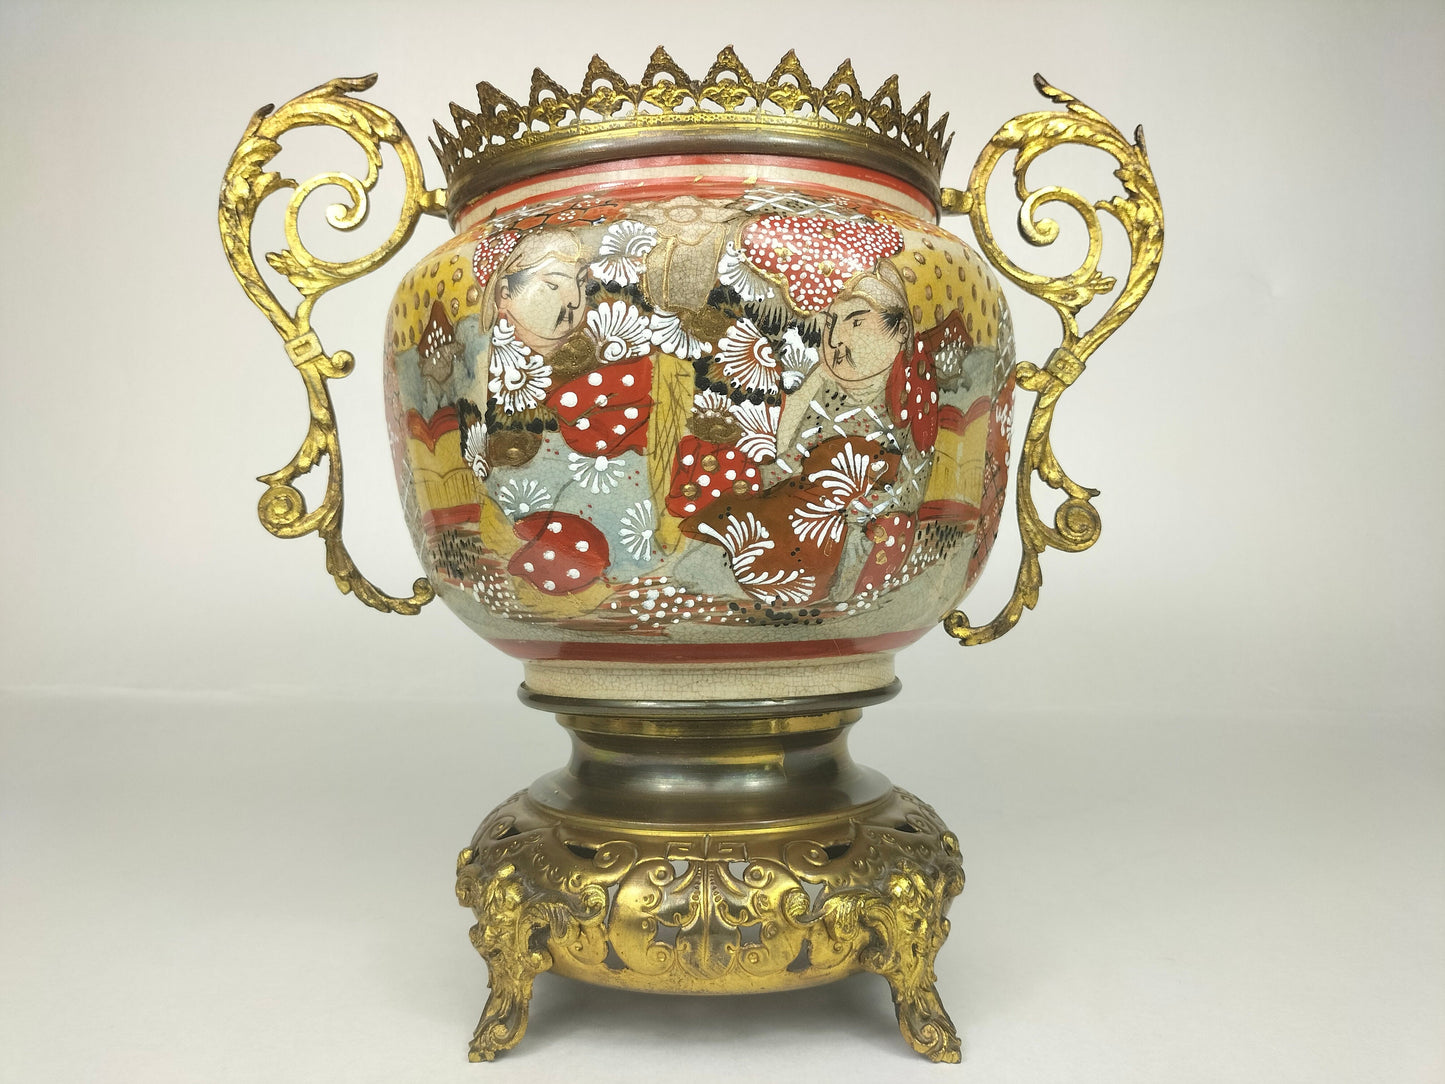 装饰有镀金黄铜的古董日本蜜柑罐 // 19 世纪 - 明治时期